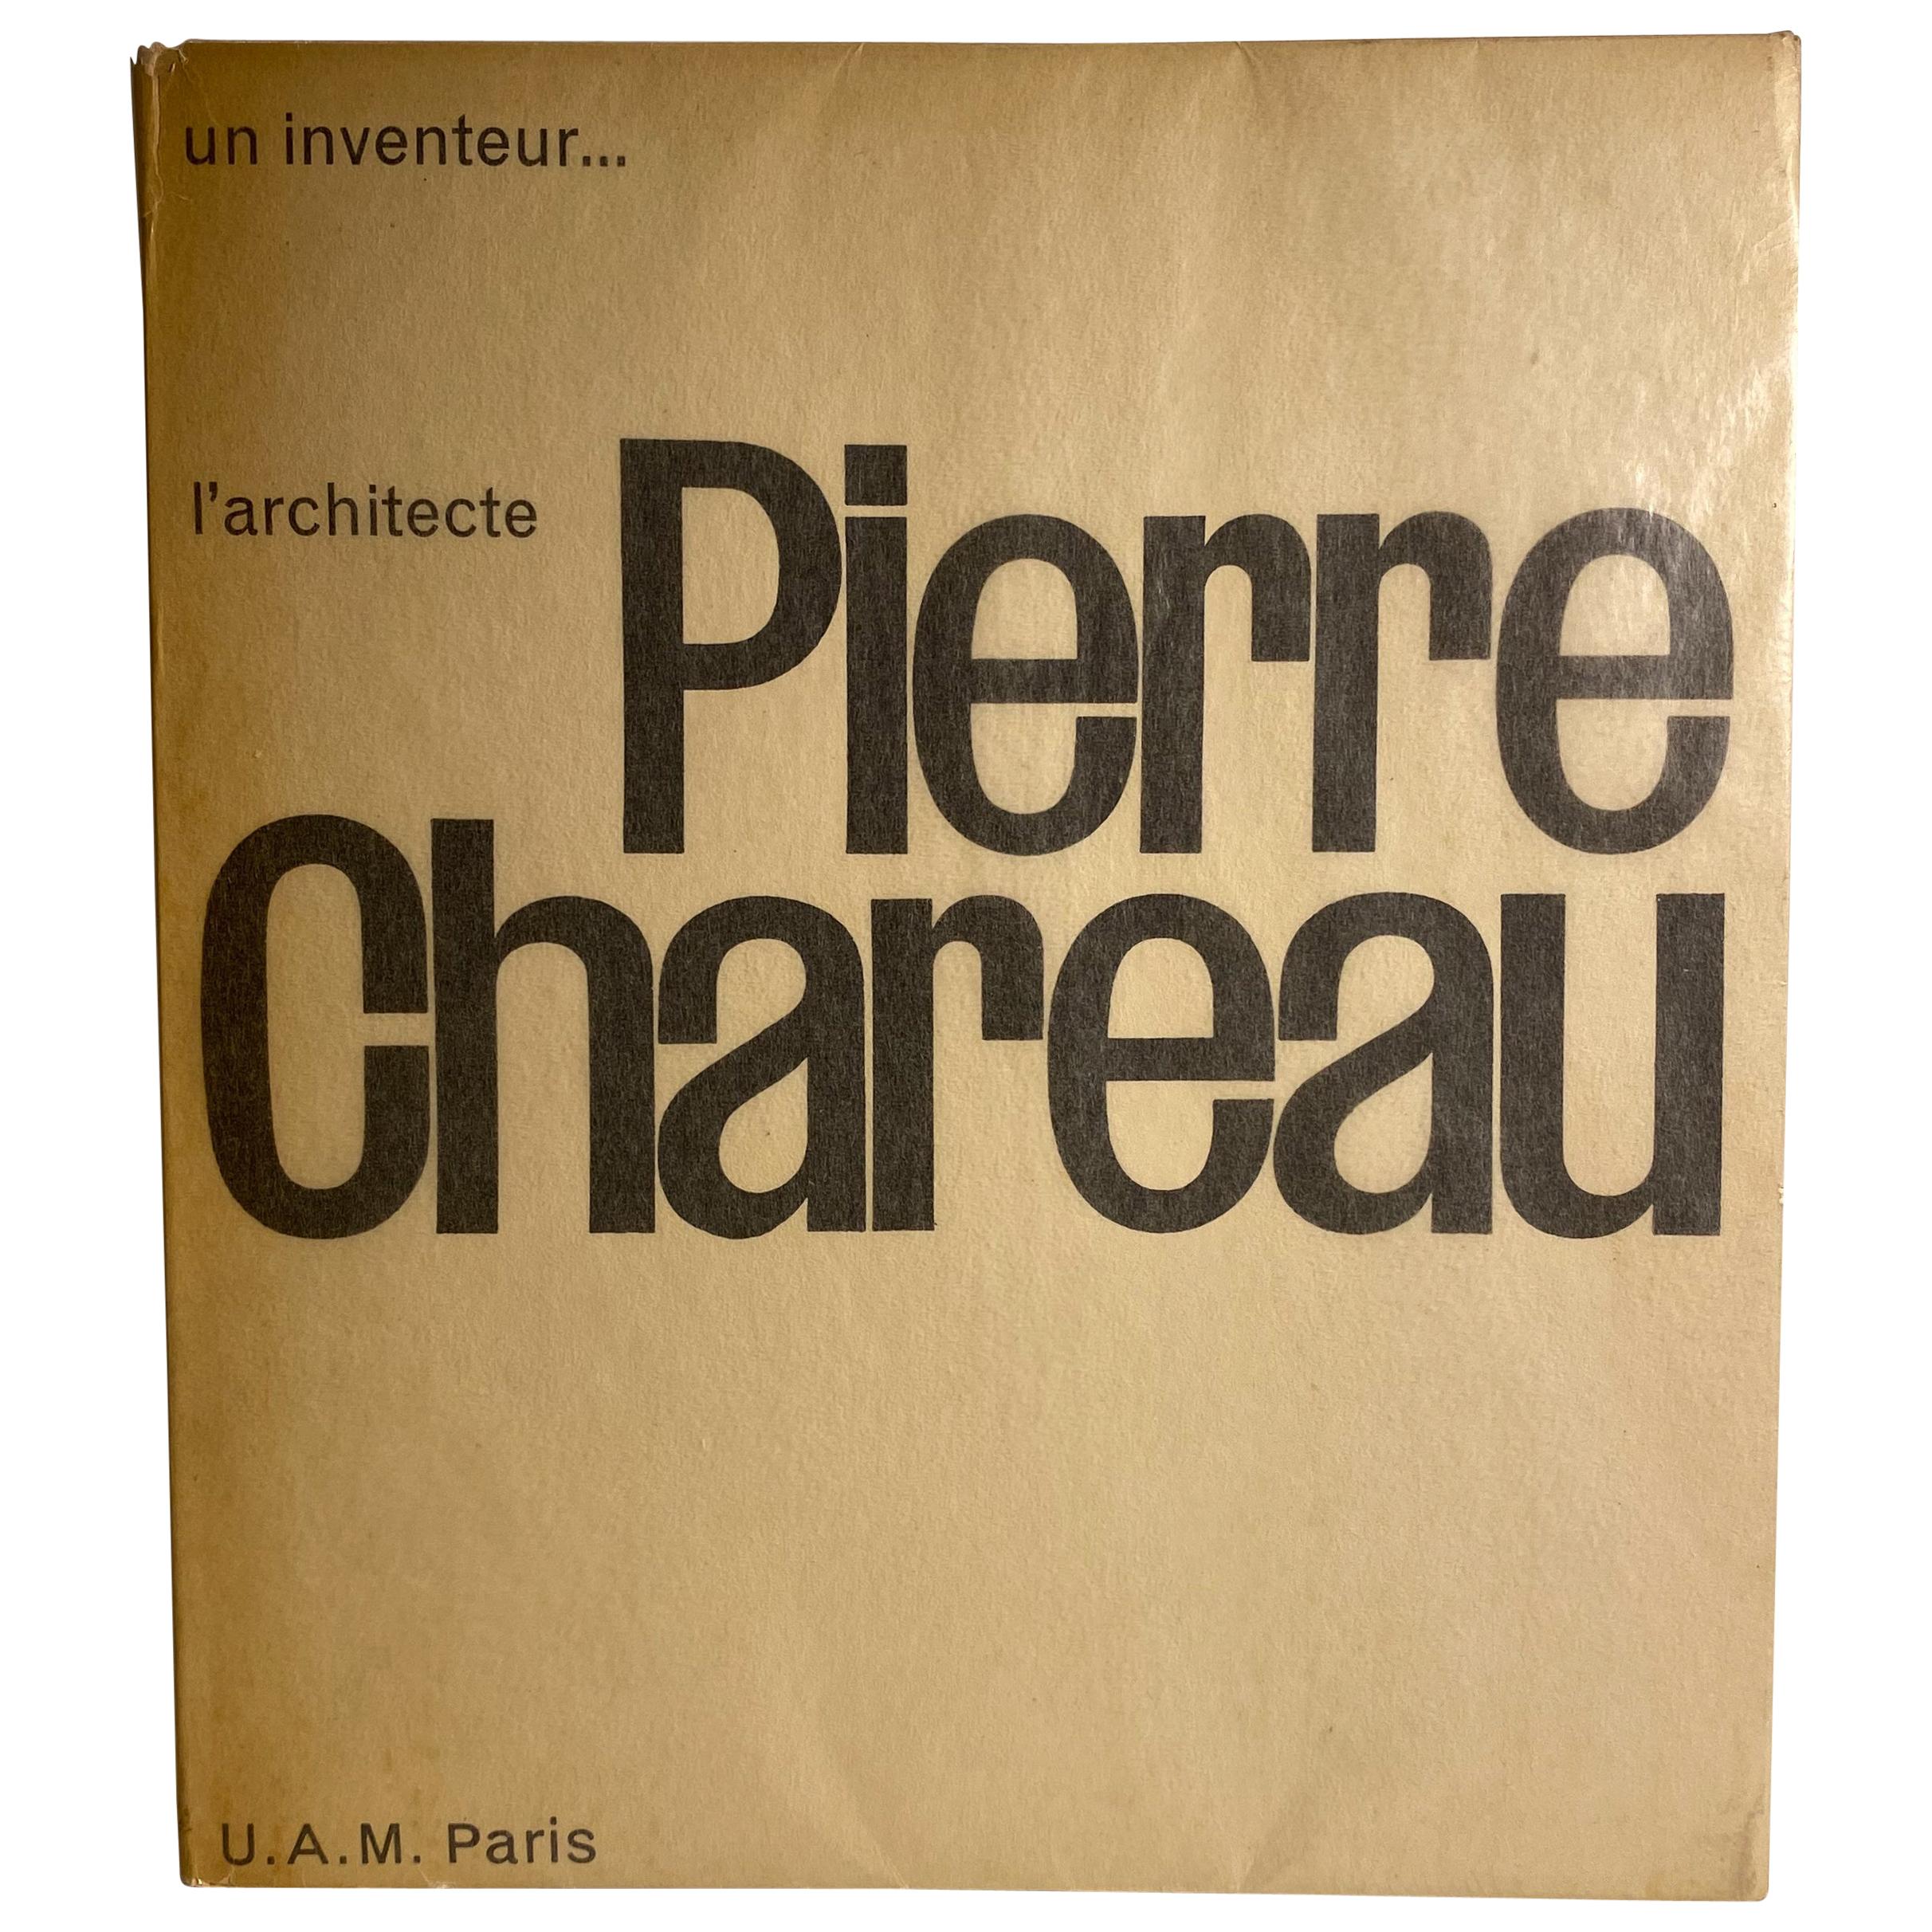 Pierre Chareau : Un Inventeur, l'architecte